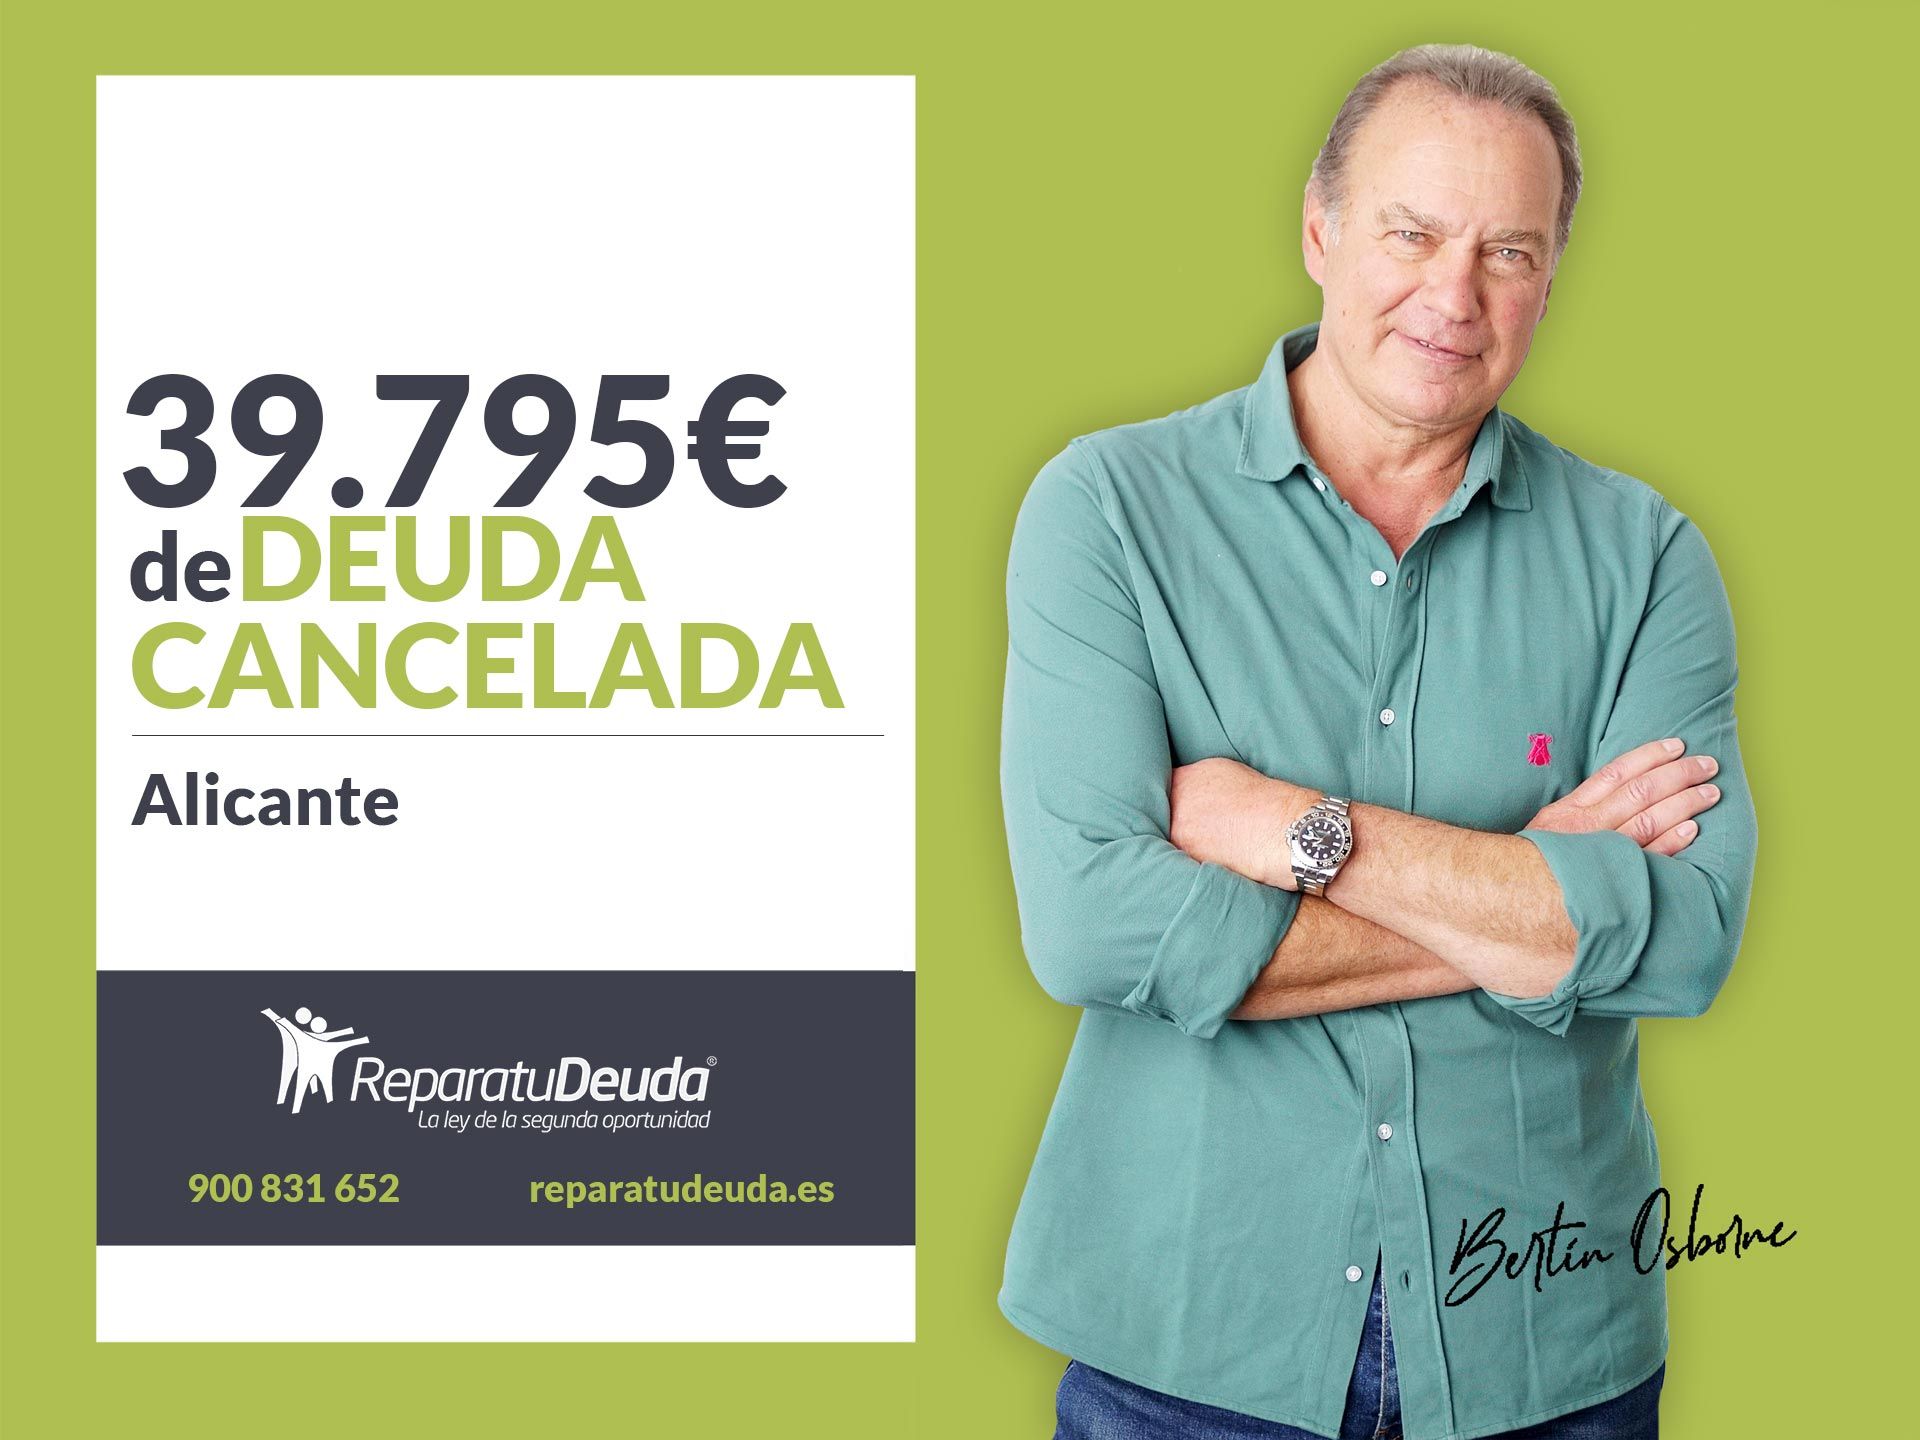 Repara tu Deuda cancela 39.795? en Alicante (Comunidad Valenciana) con la Ley de Segunda Oportunidad